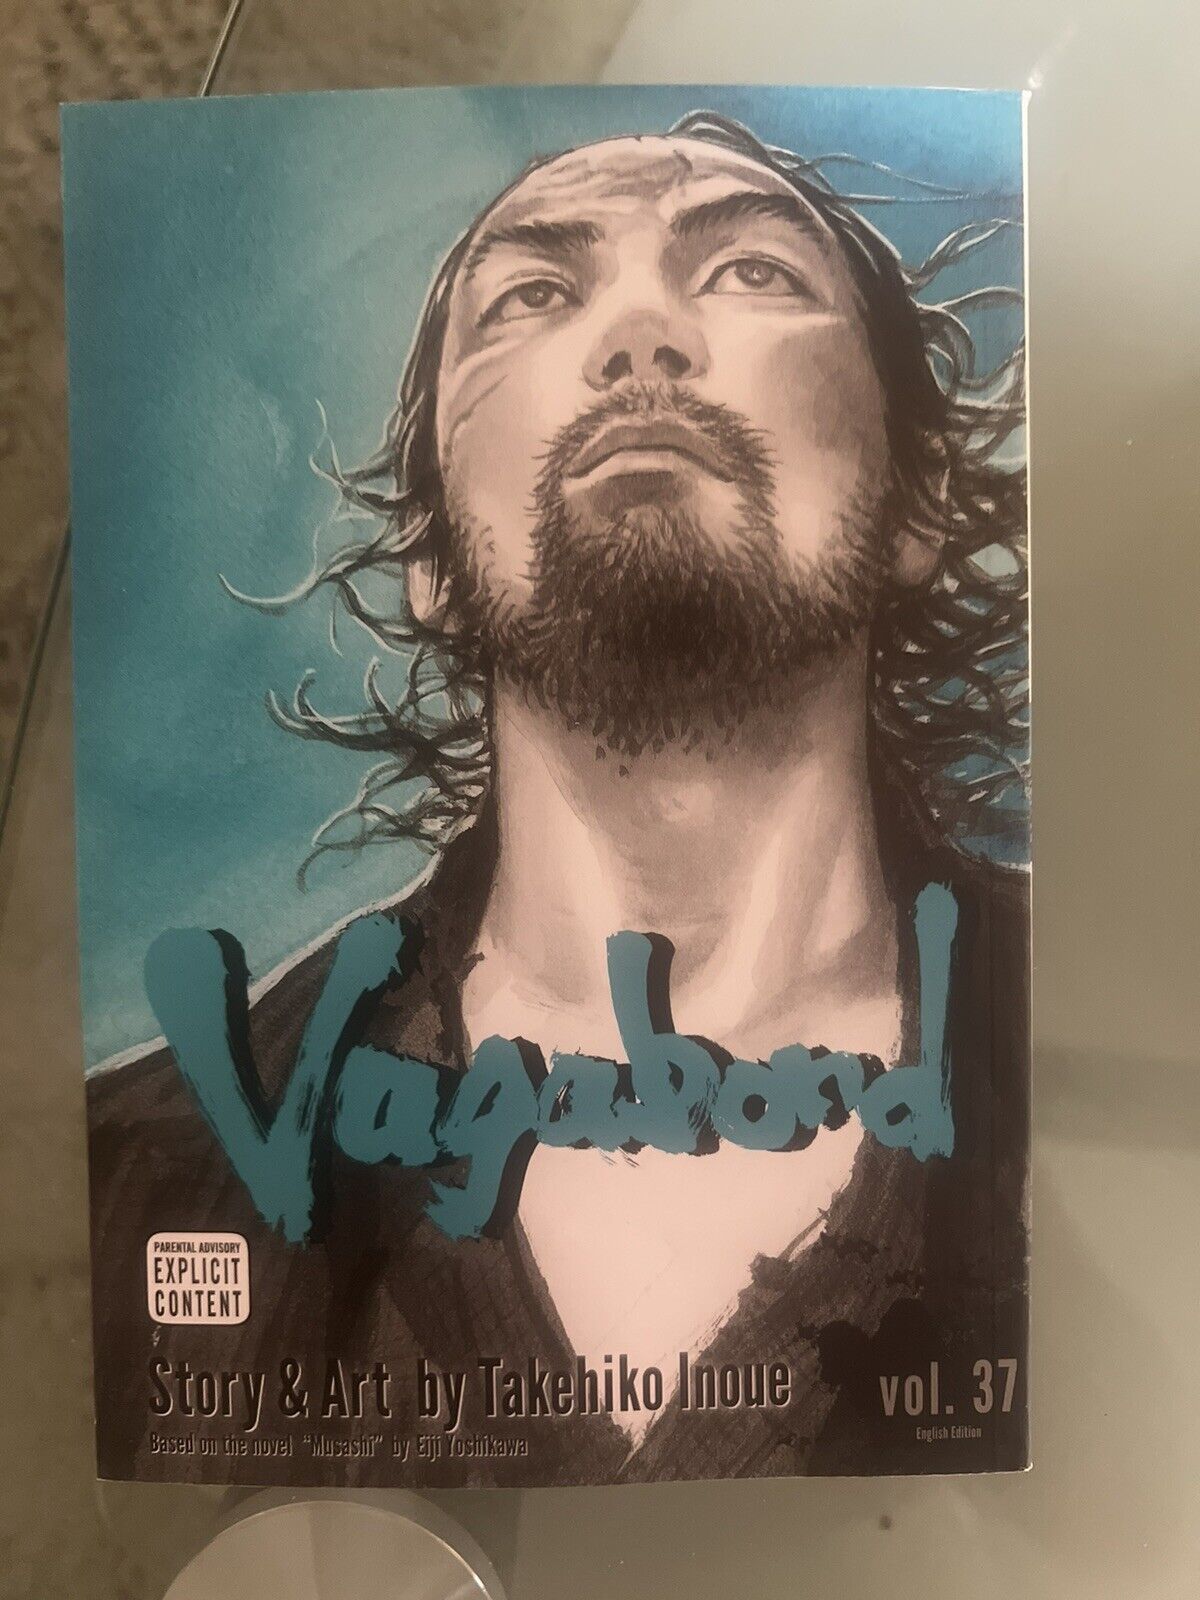 Vagabond Volume 37 Manga English Vol Takehiko Inoue Single